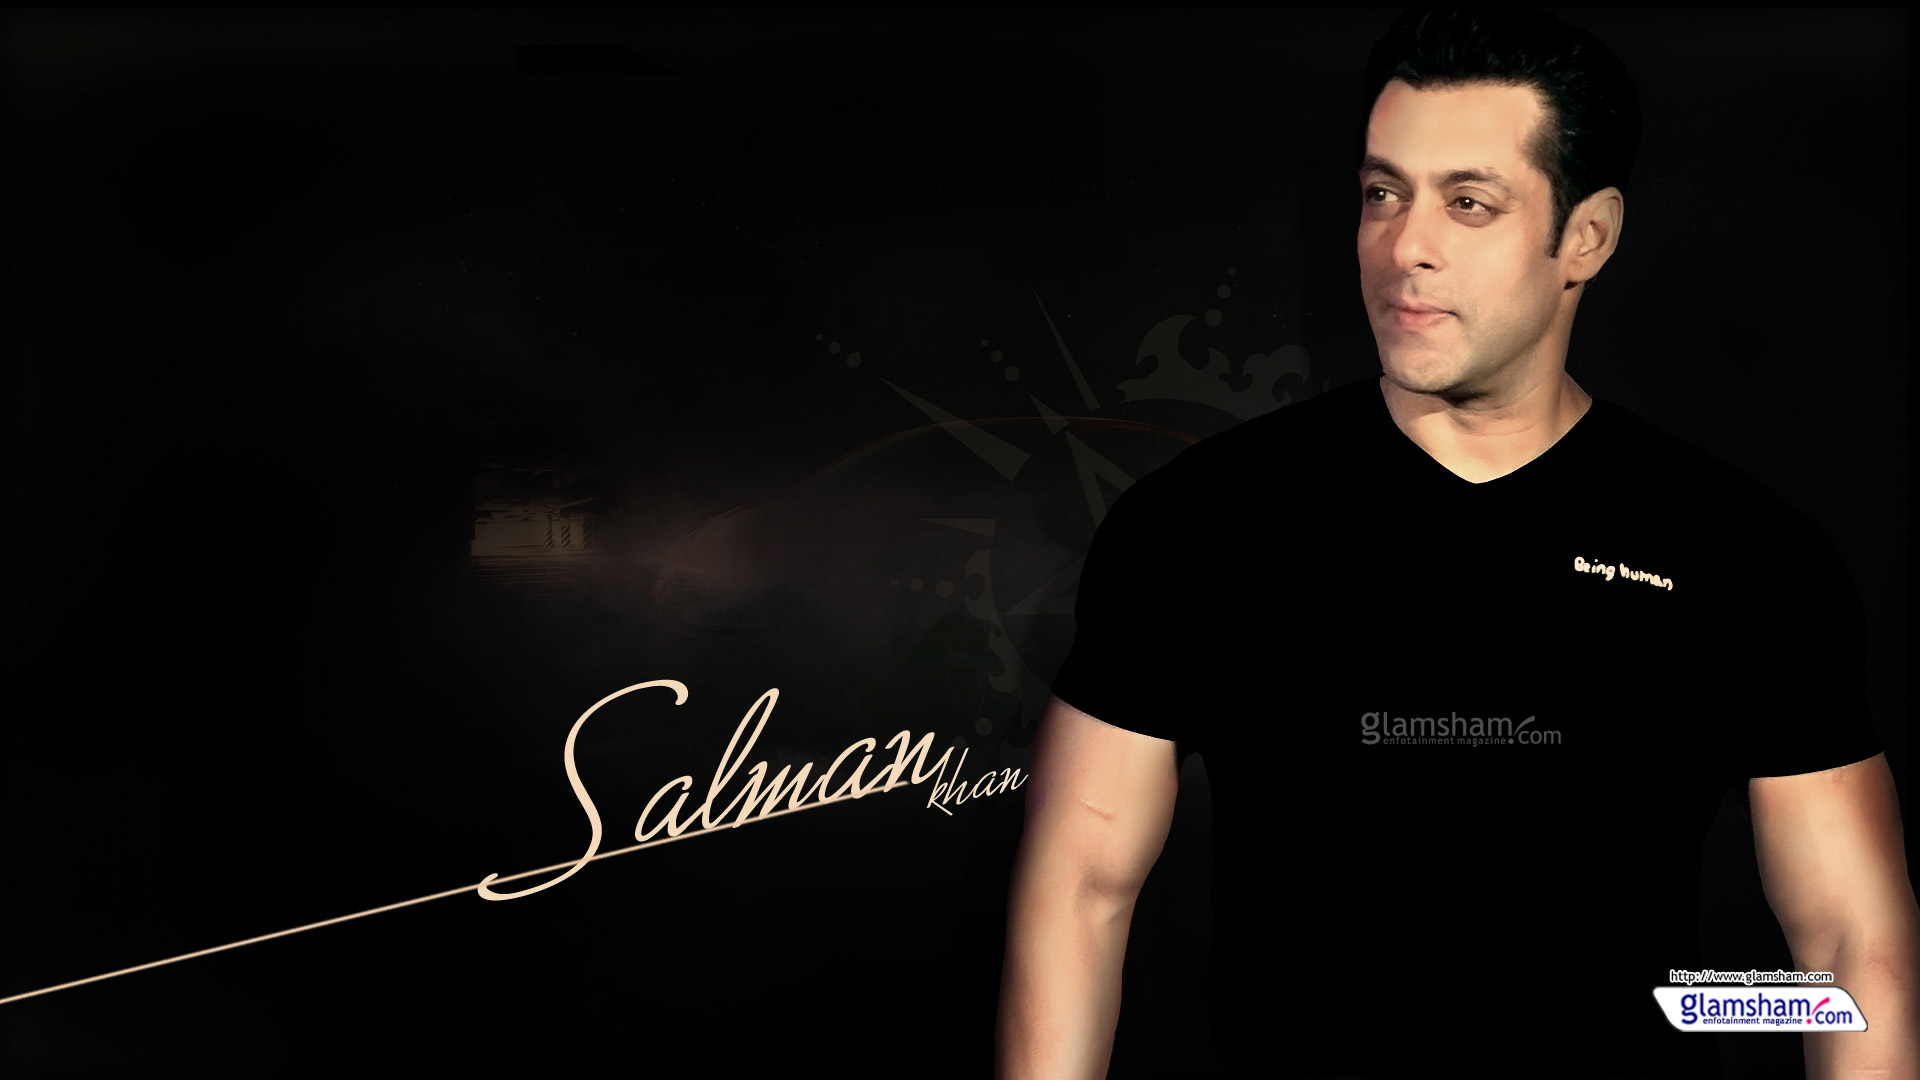 Salman Khan high resolution image 61248 - Glamsham